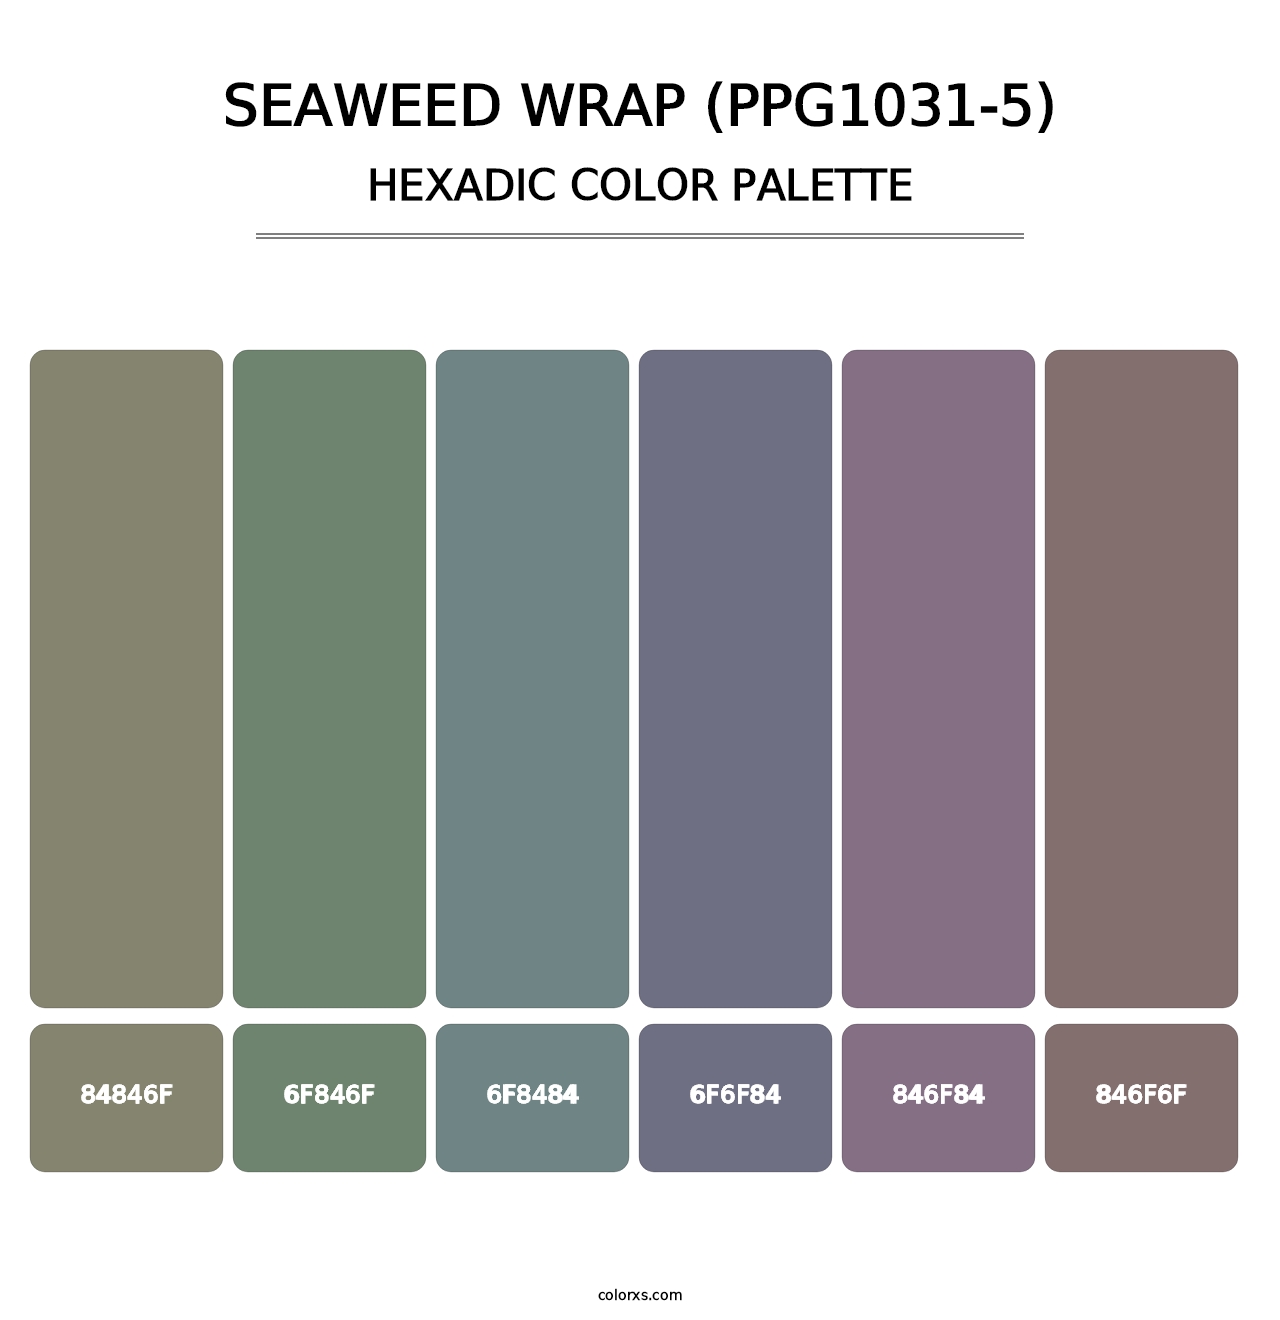 Seaweed Wrap (PPG1031-5) - Hexadic Color Palette